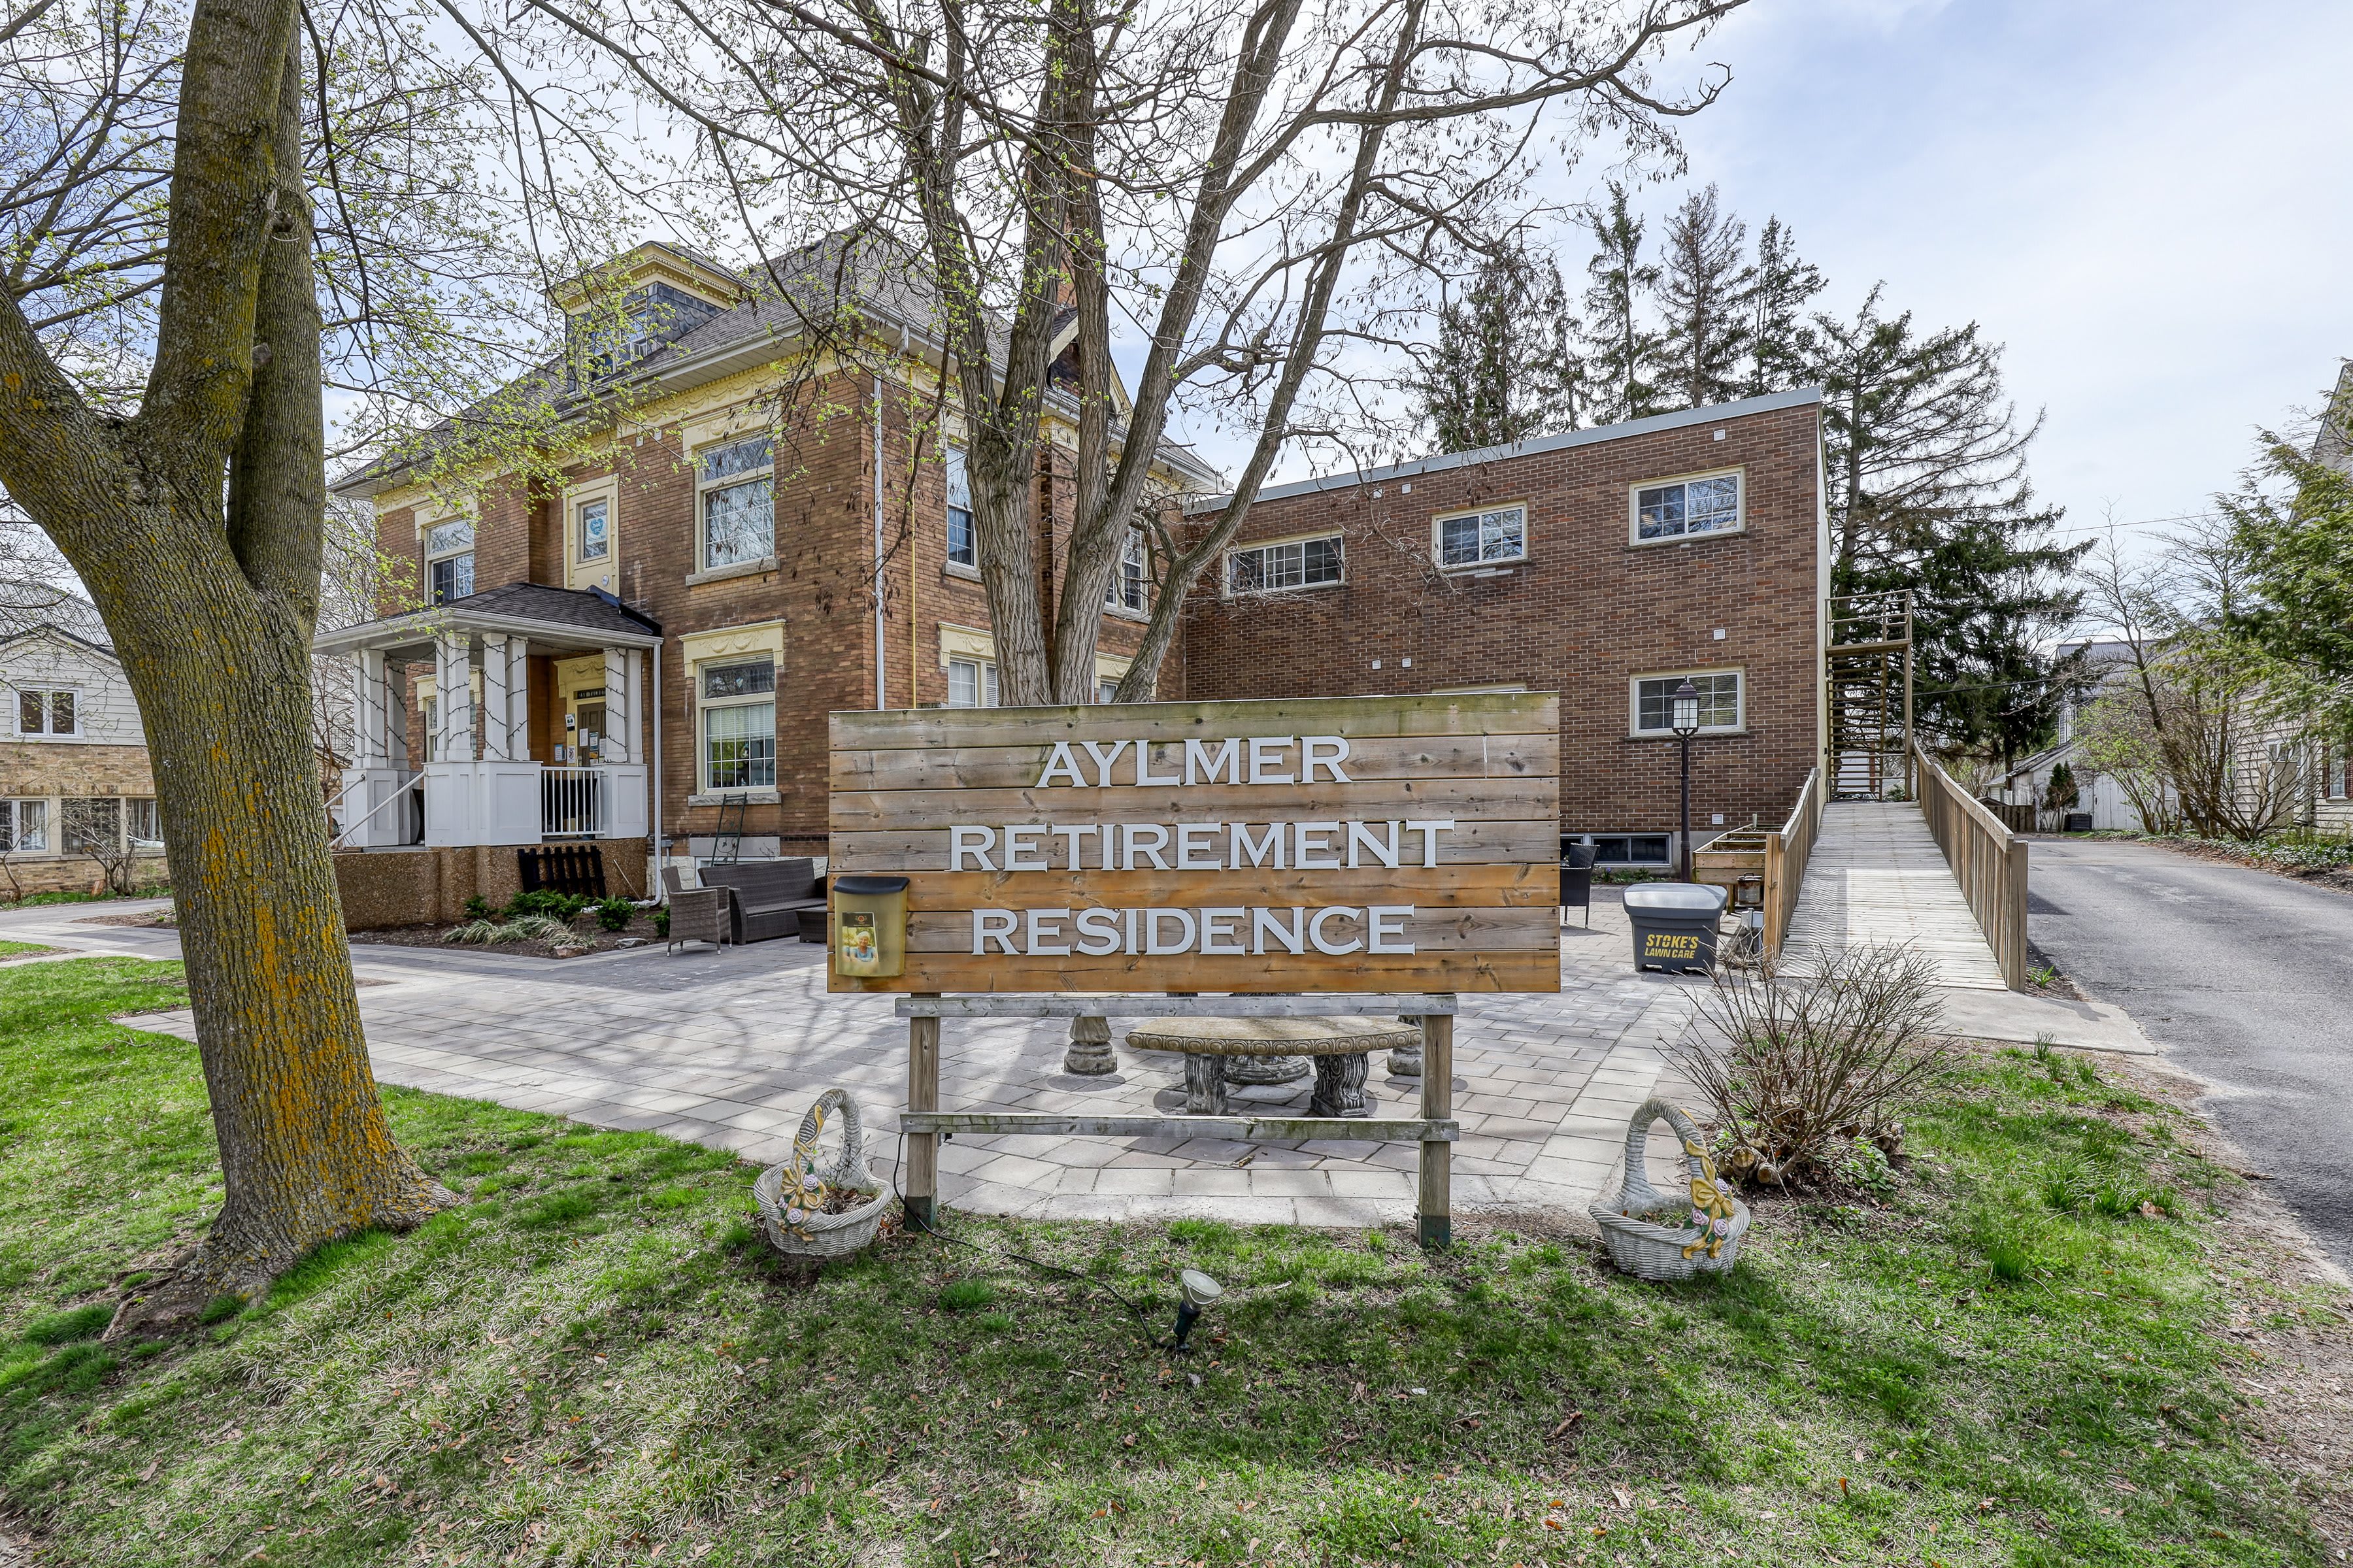 Photo of Aylmer Retirement Residence